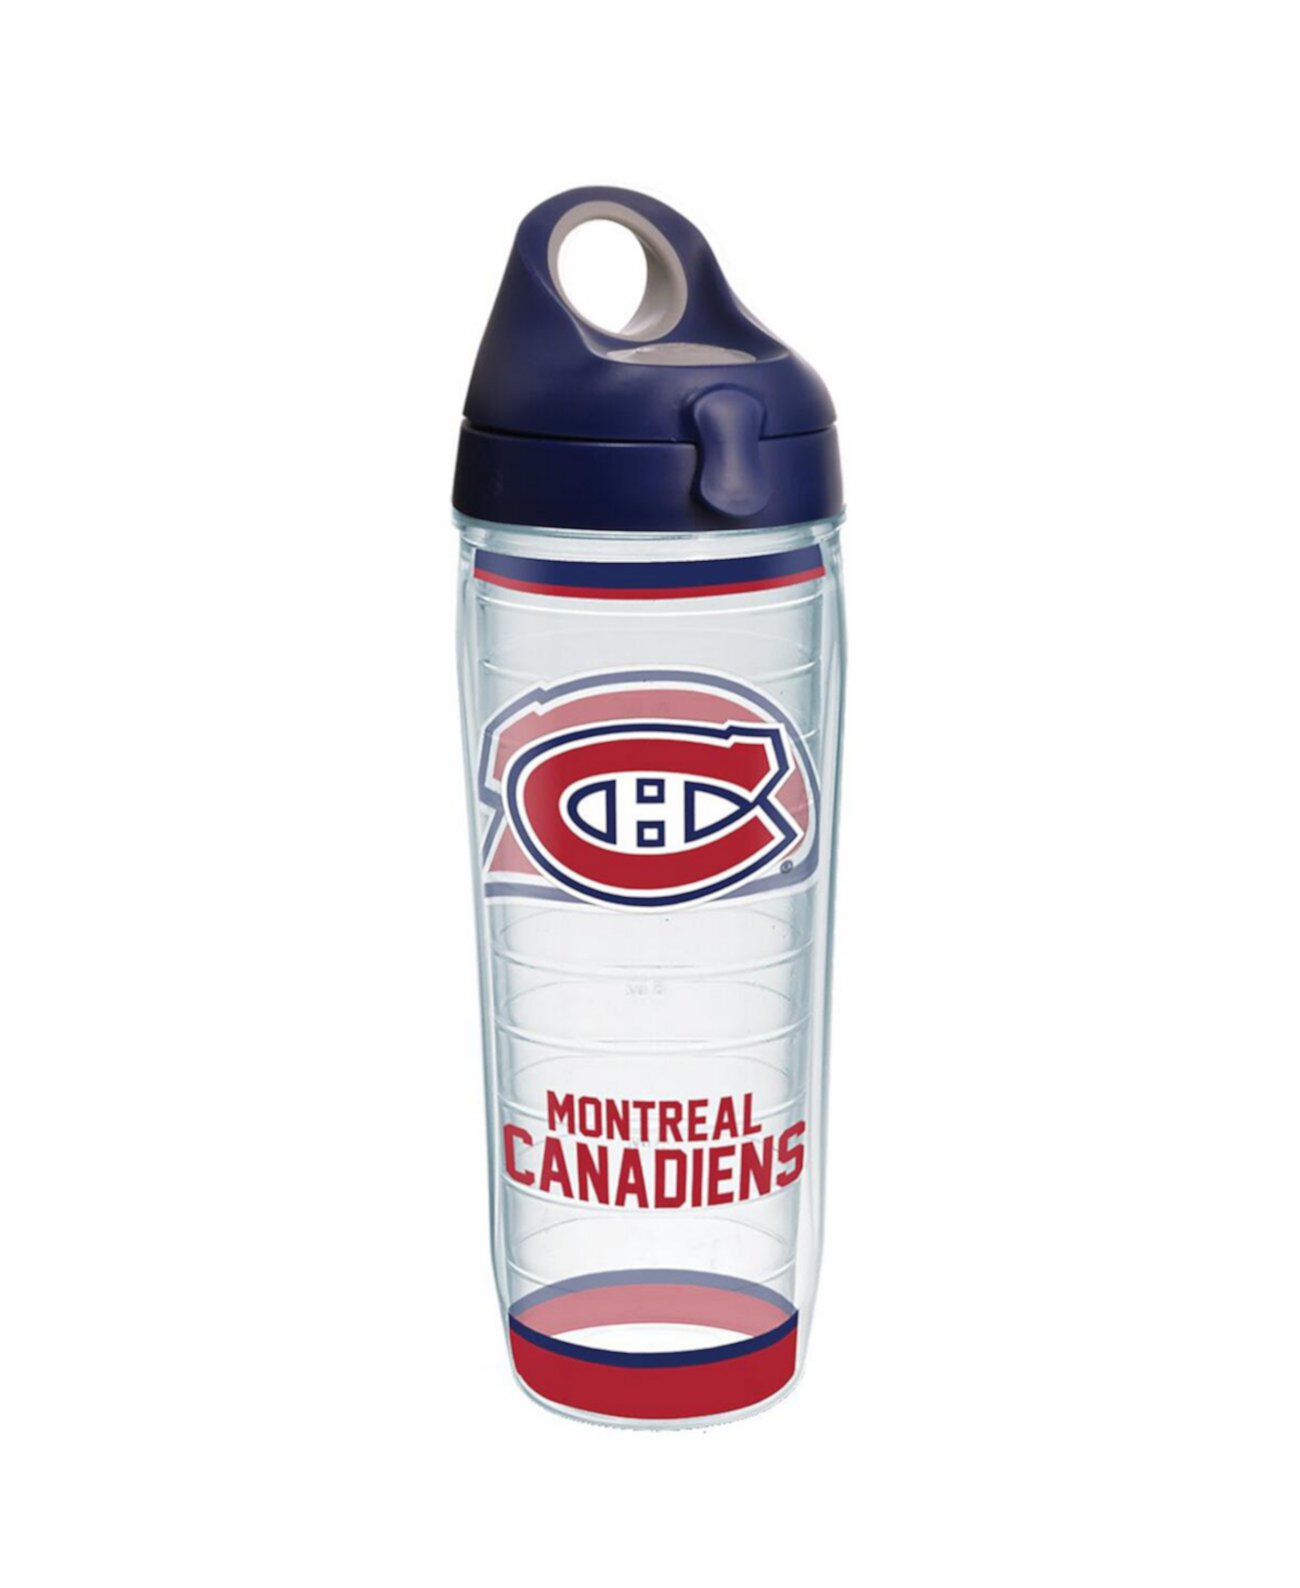 Традиционная классическая бутылка для воды Montreal Canadiens емкостью 24 унции Tervis